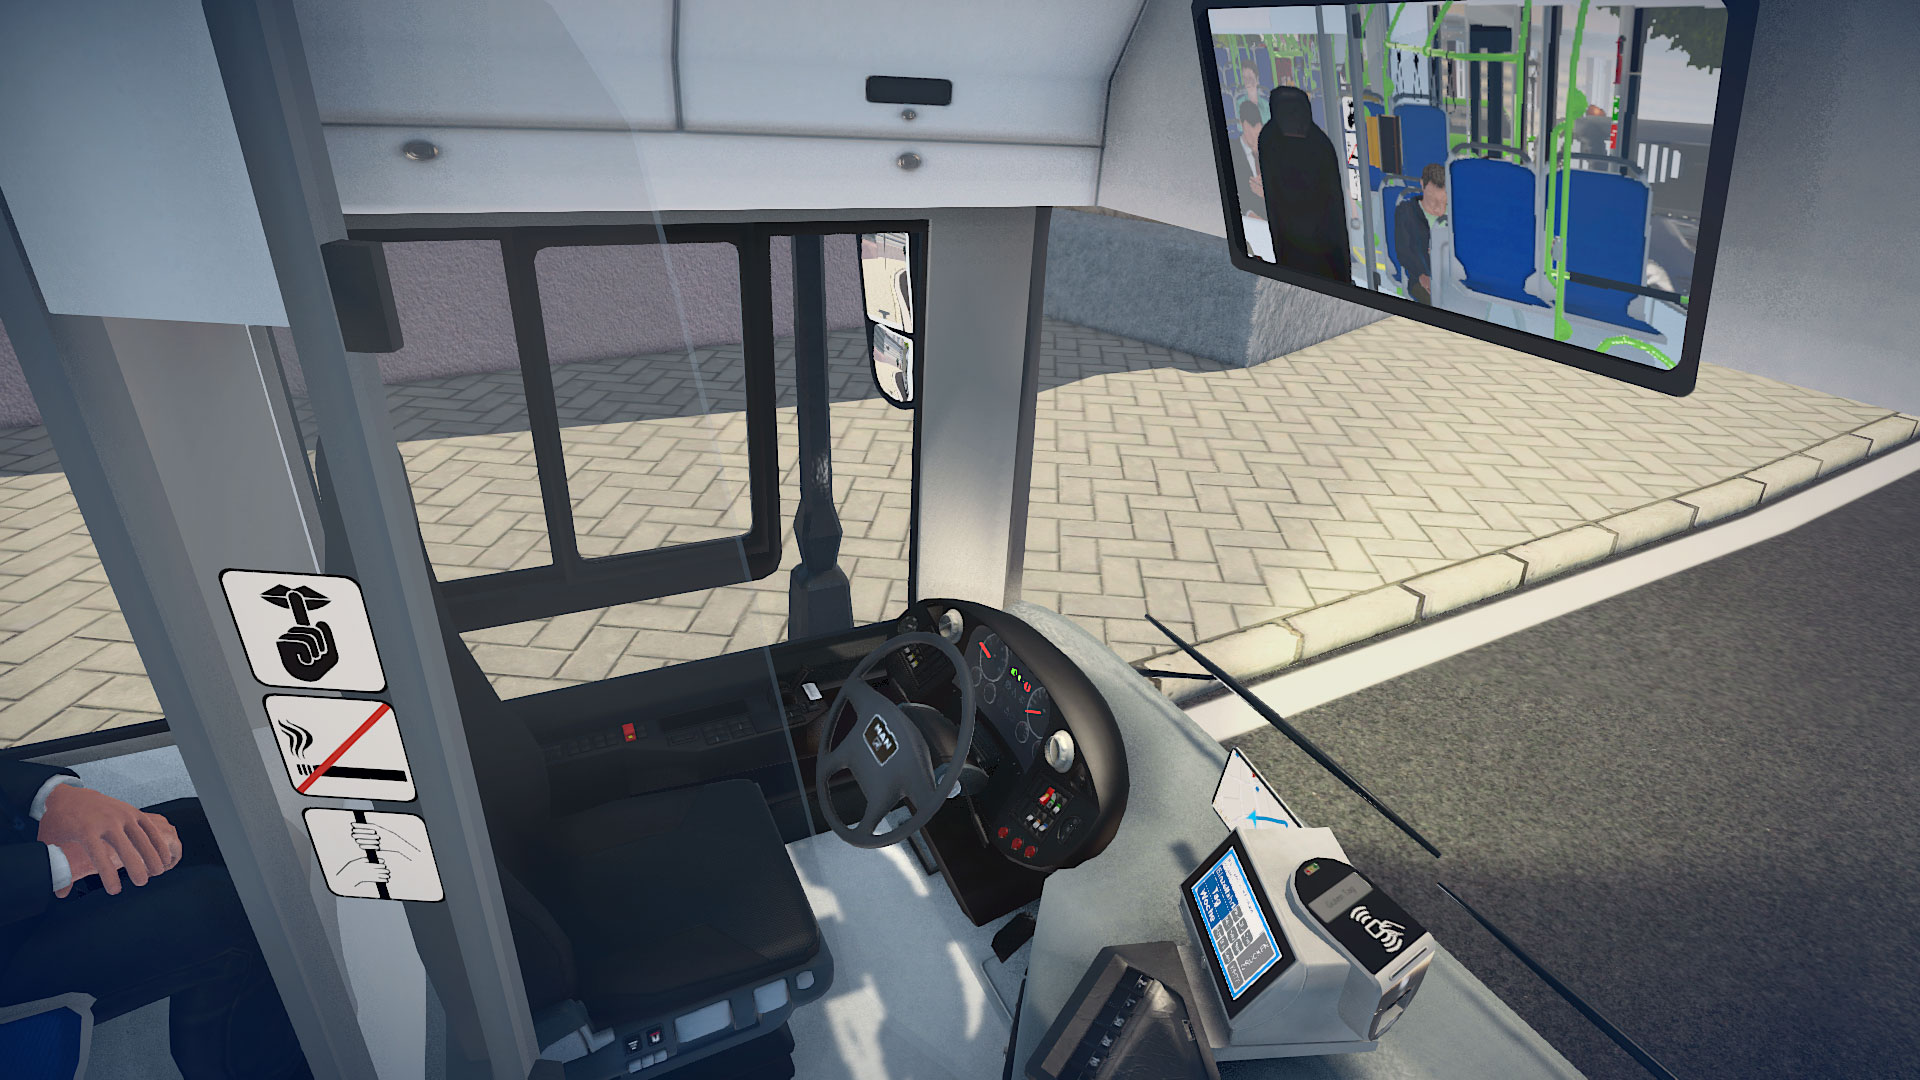 bus simulator 16 download free